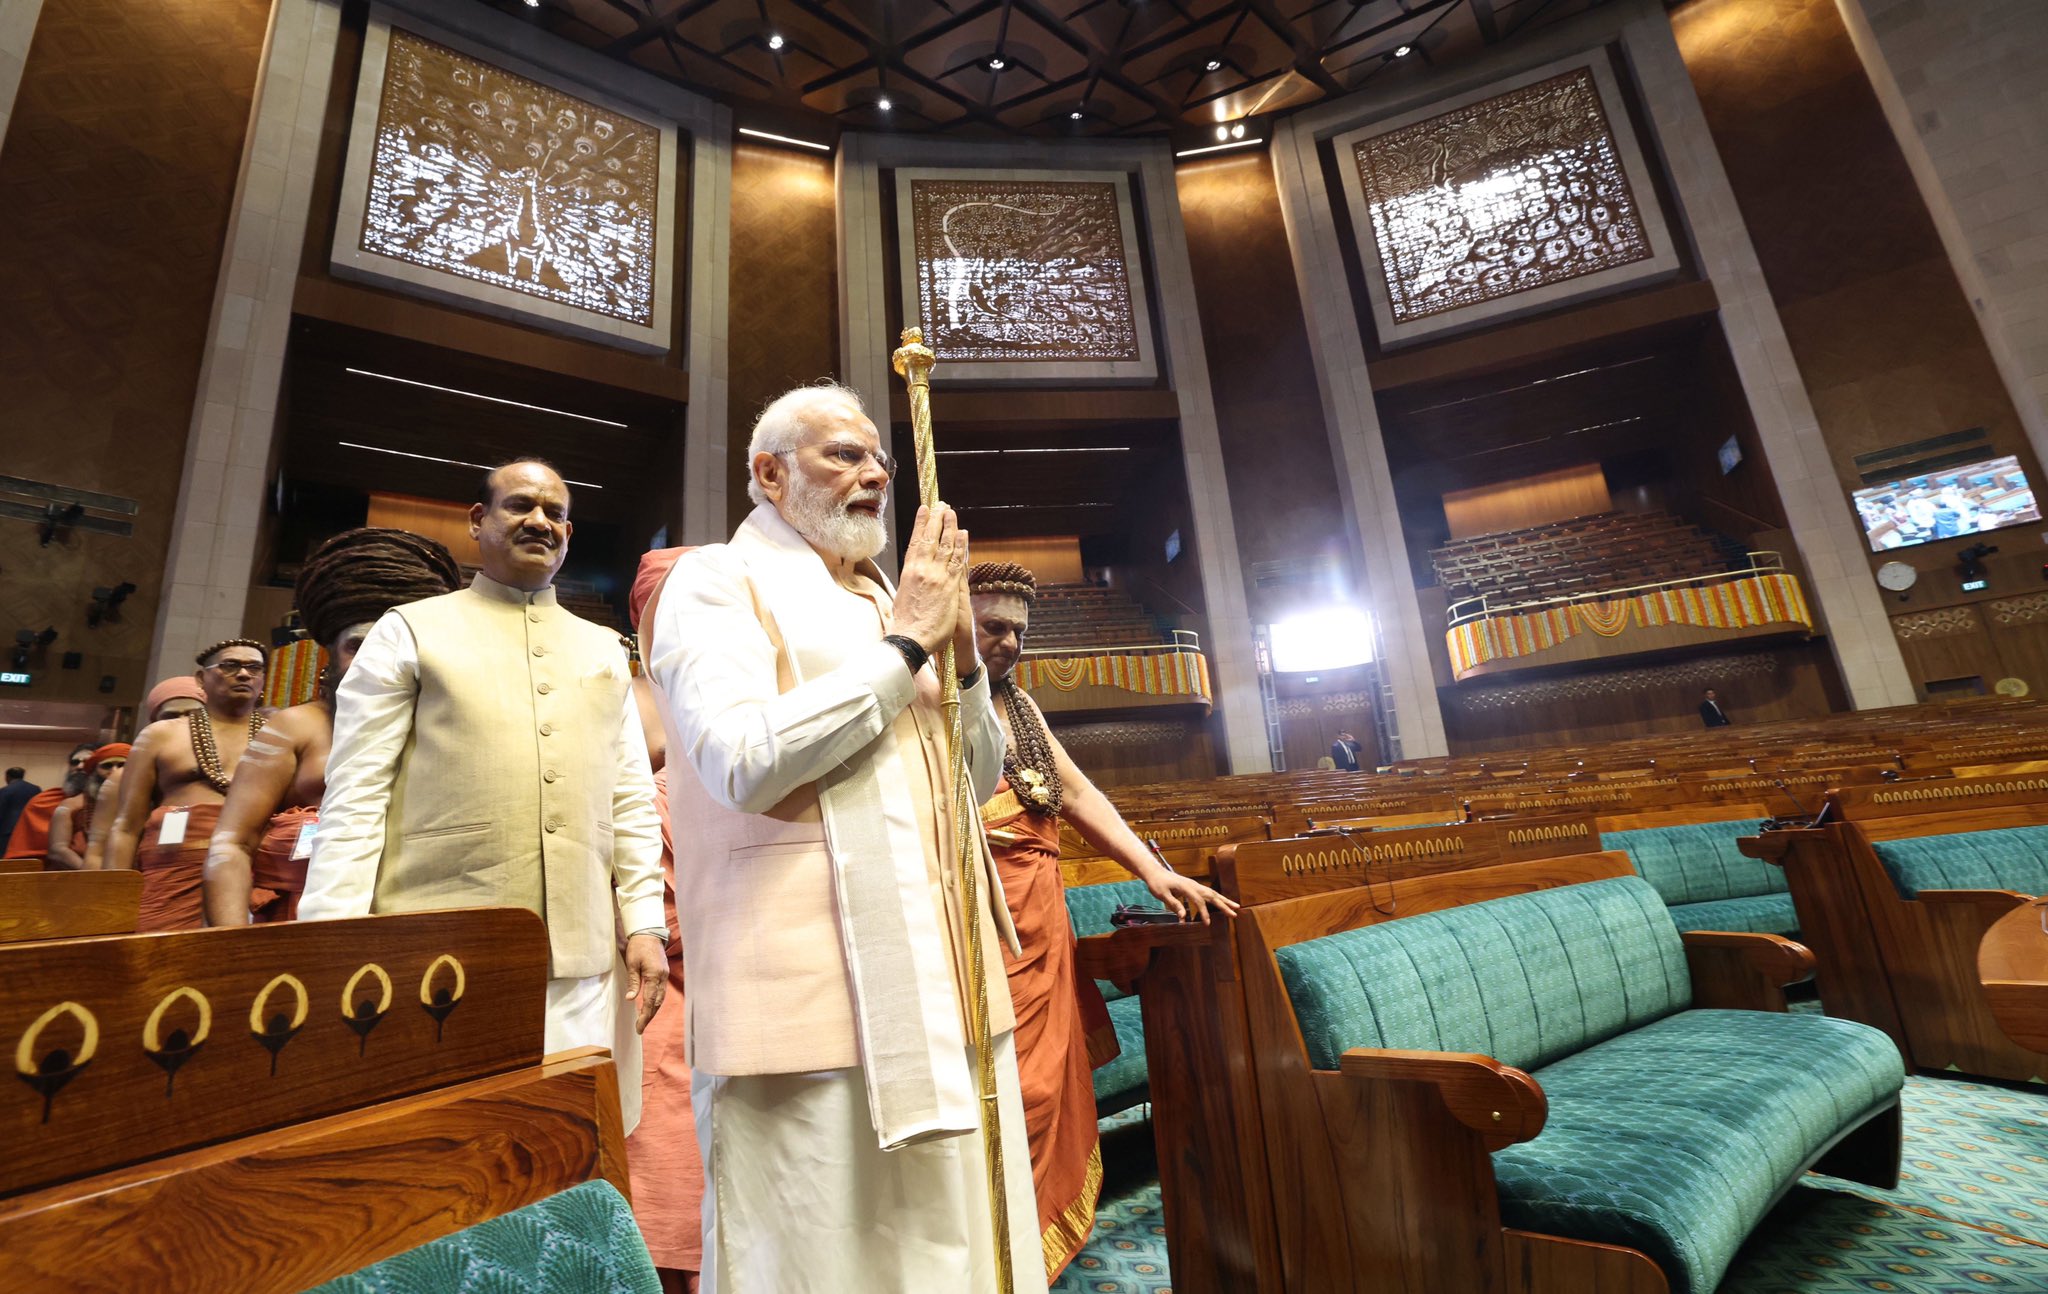 ہندوستان کی پارلیمانی تاریخ نے کیسے لیا ایک نیا موڑ؟جمہوریتی نظام اور پارلیمنٹ پر خاص تحریر